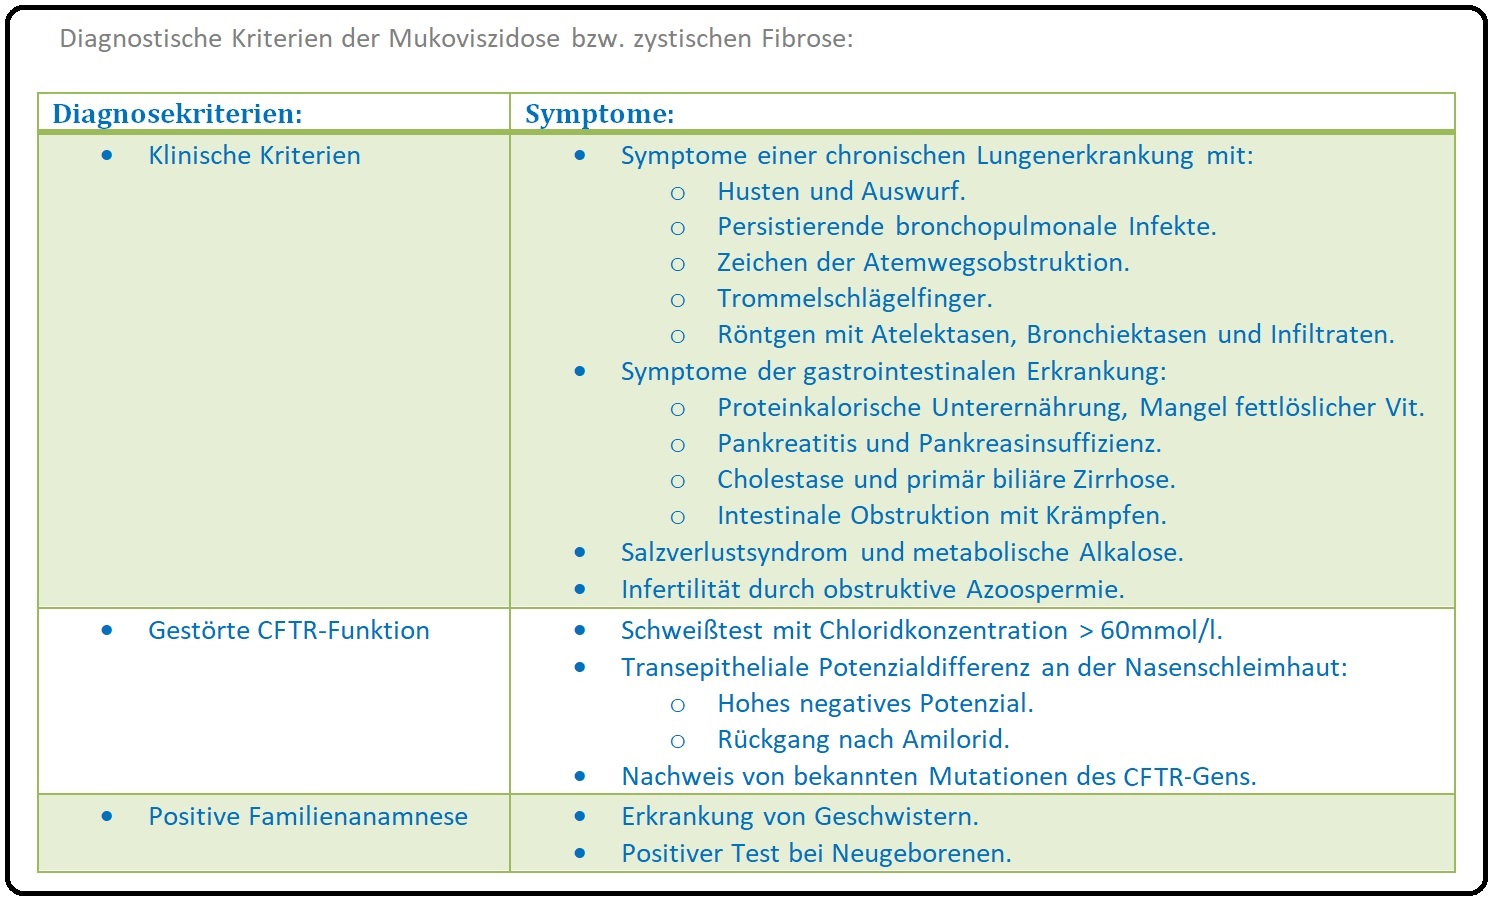 985 Diagnostische Kriterien der Mukoviszidose bzw zystischen Fibrose